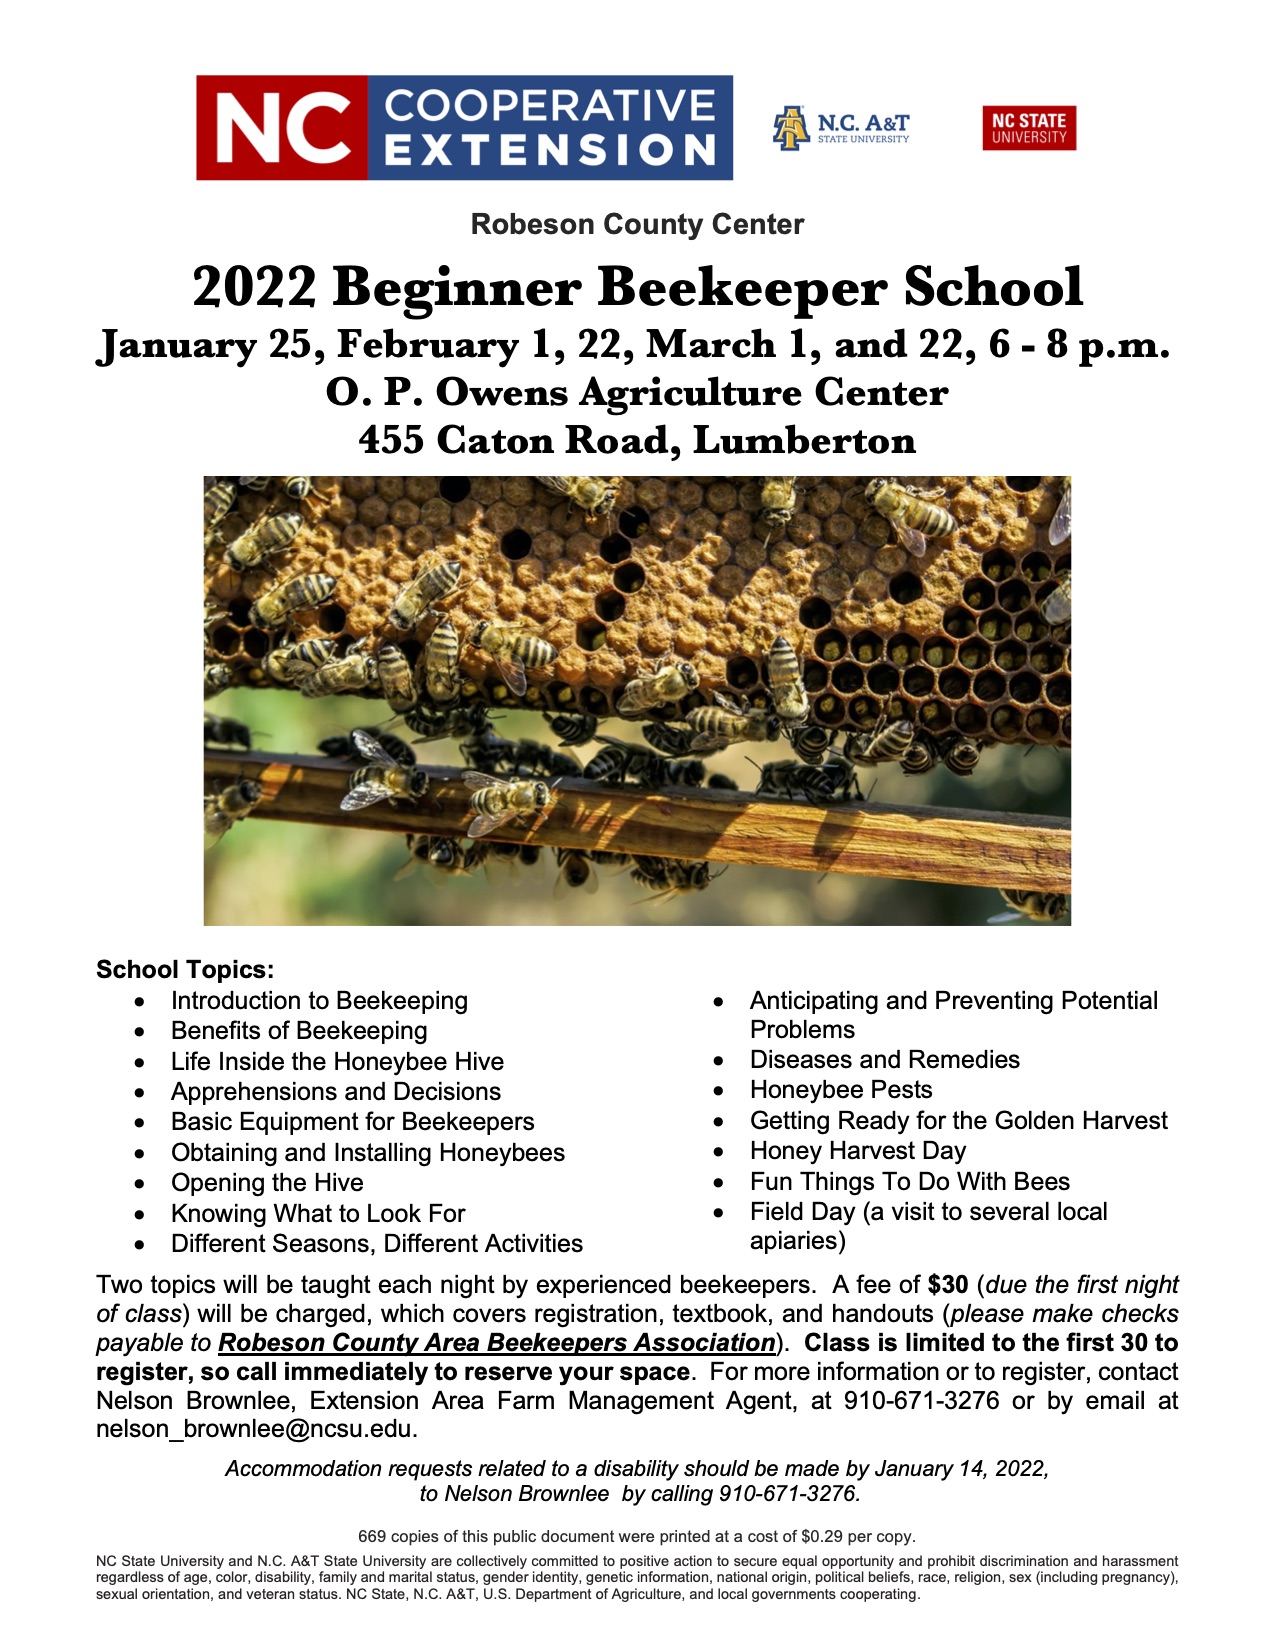 Flier for beekeeper school